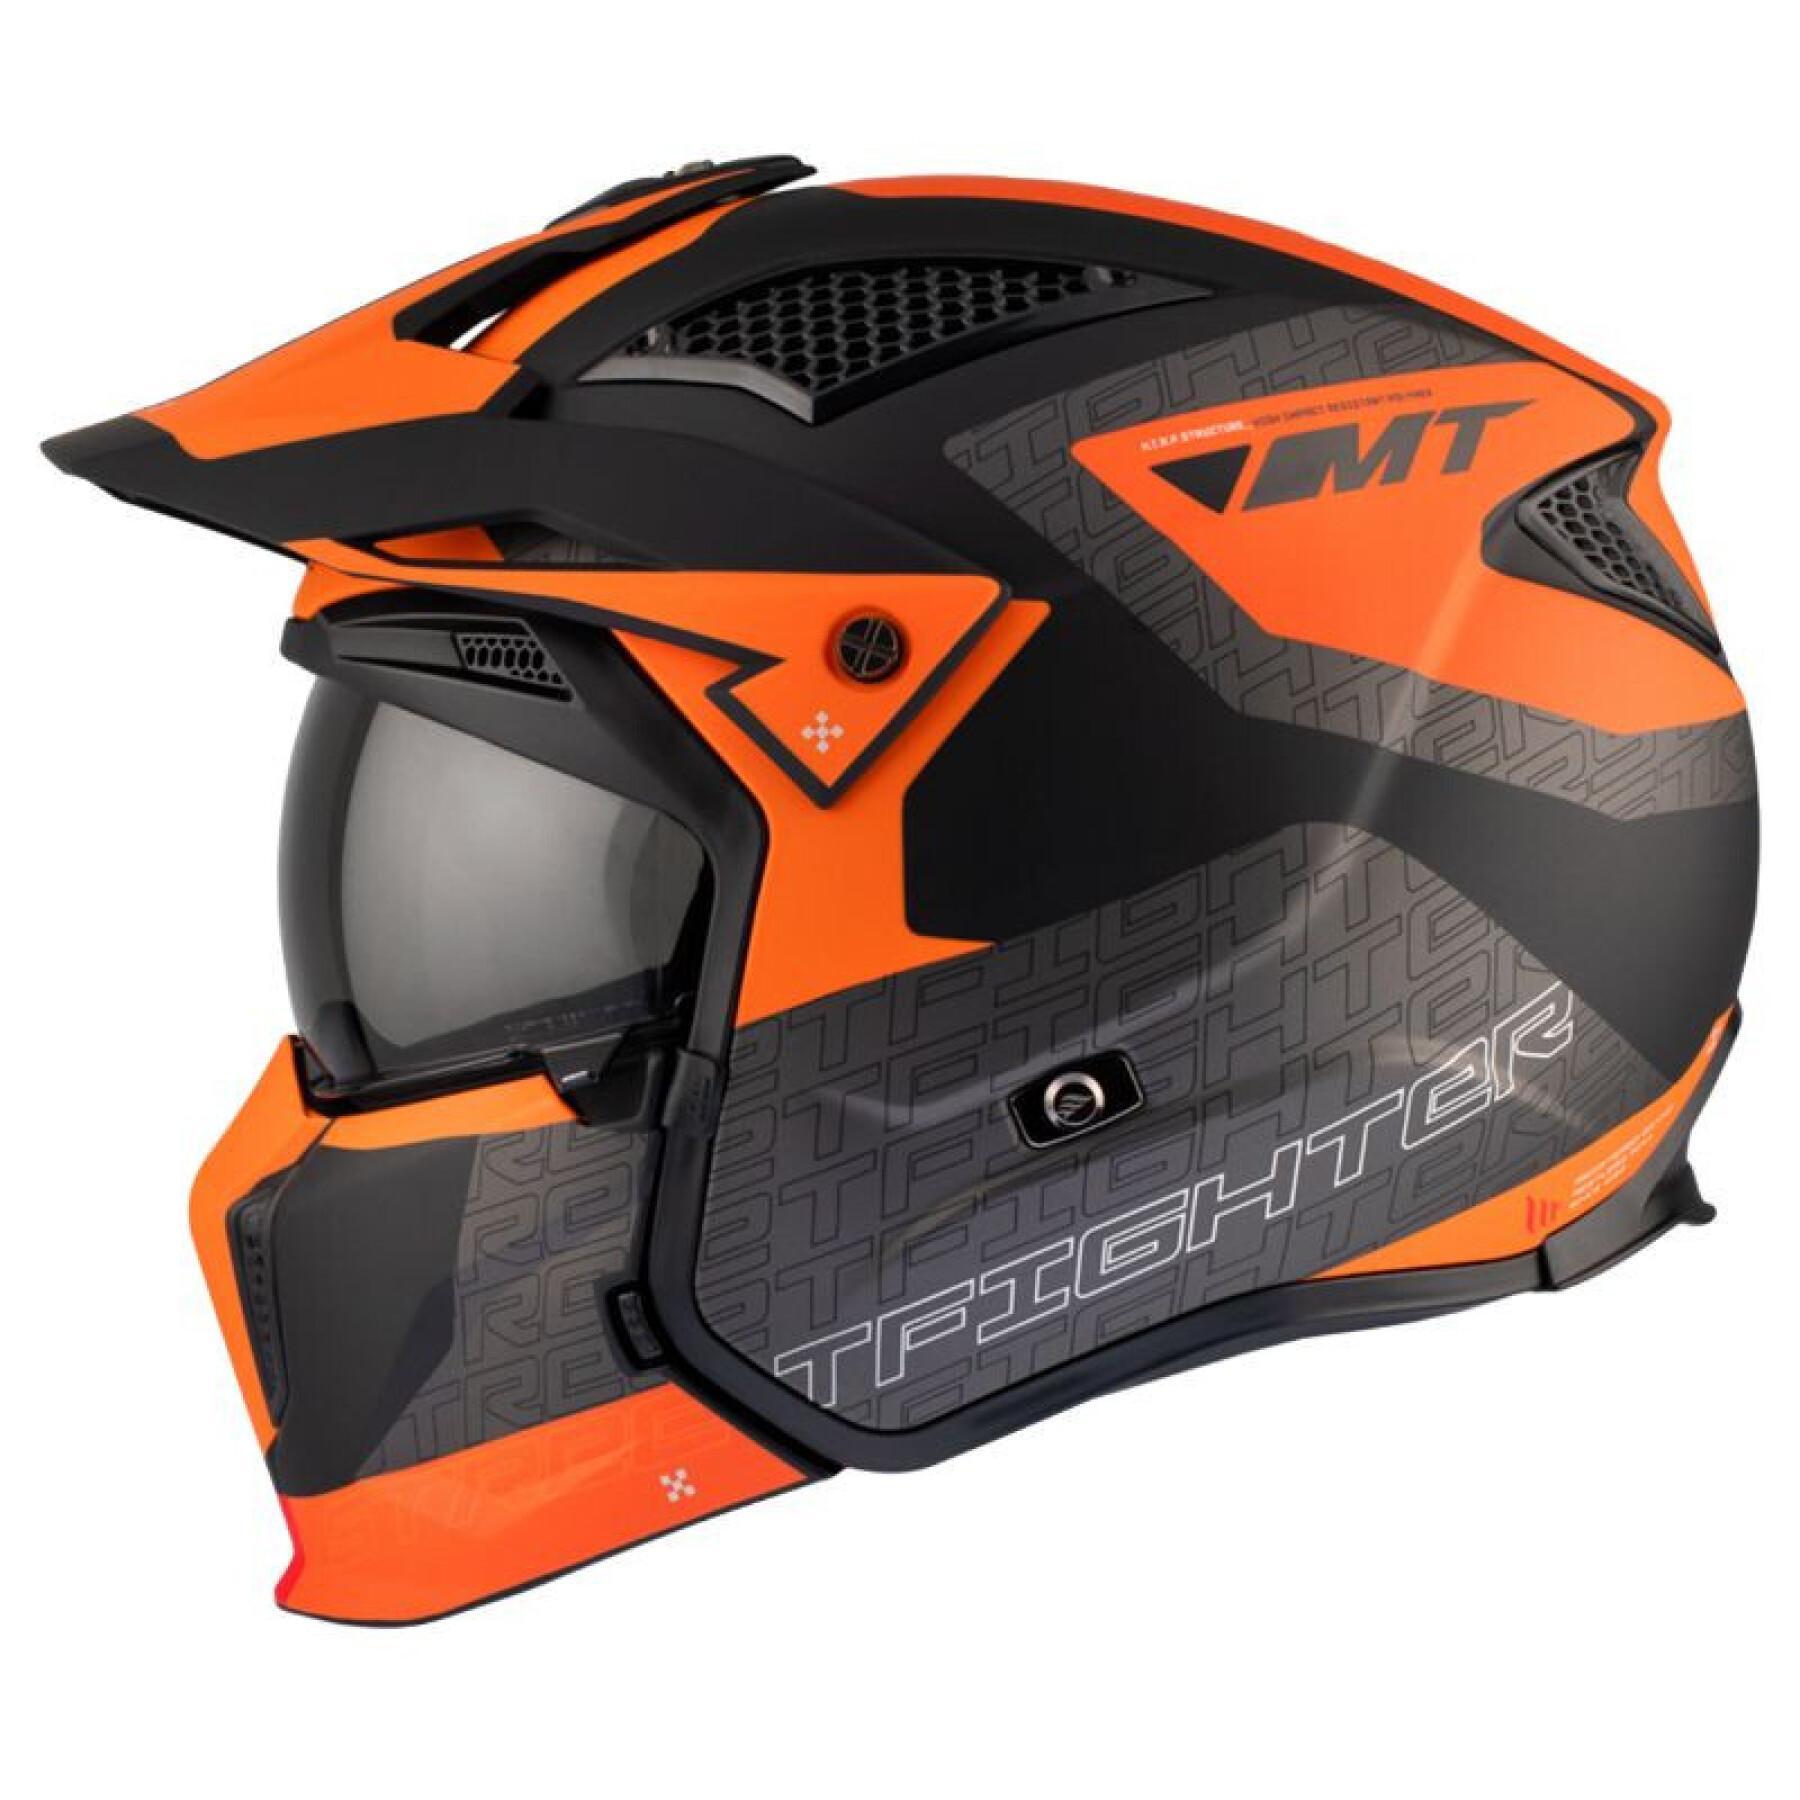 Casco da motocross monoschermo convertibile con mentoniera rimovibile MT Helmets Streetfighter Sv Totem B4 (Ece 22.06)